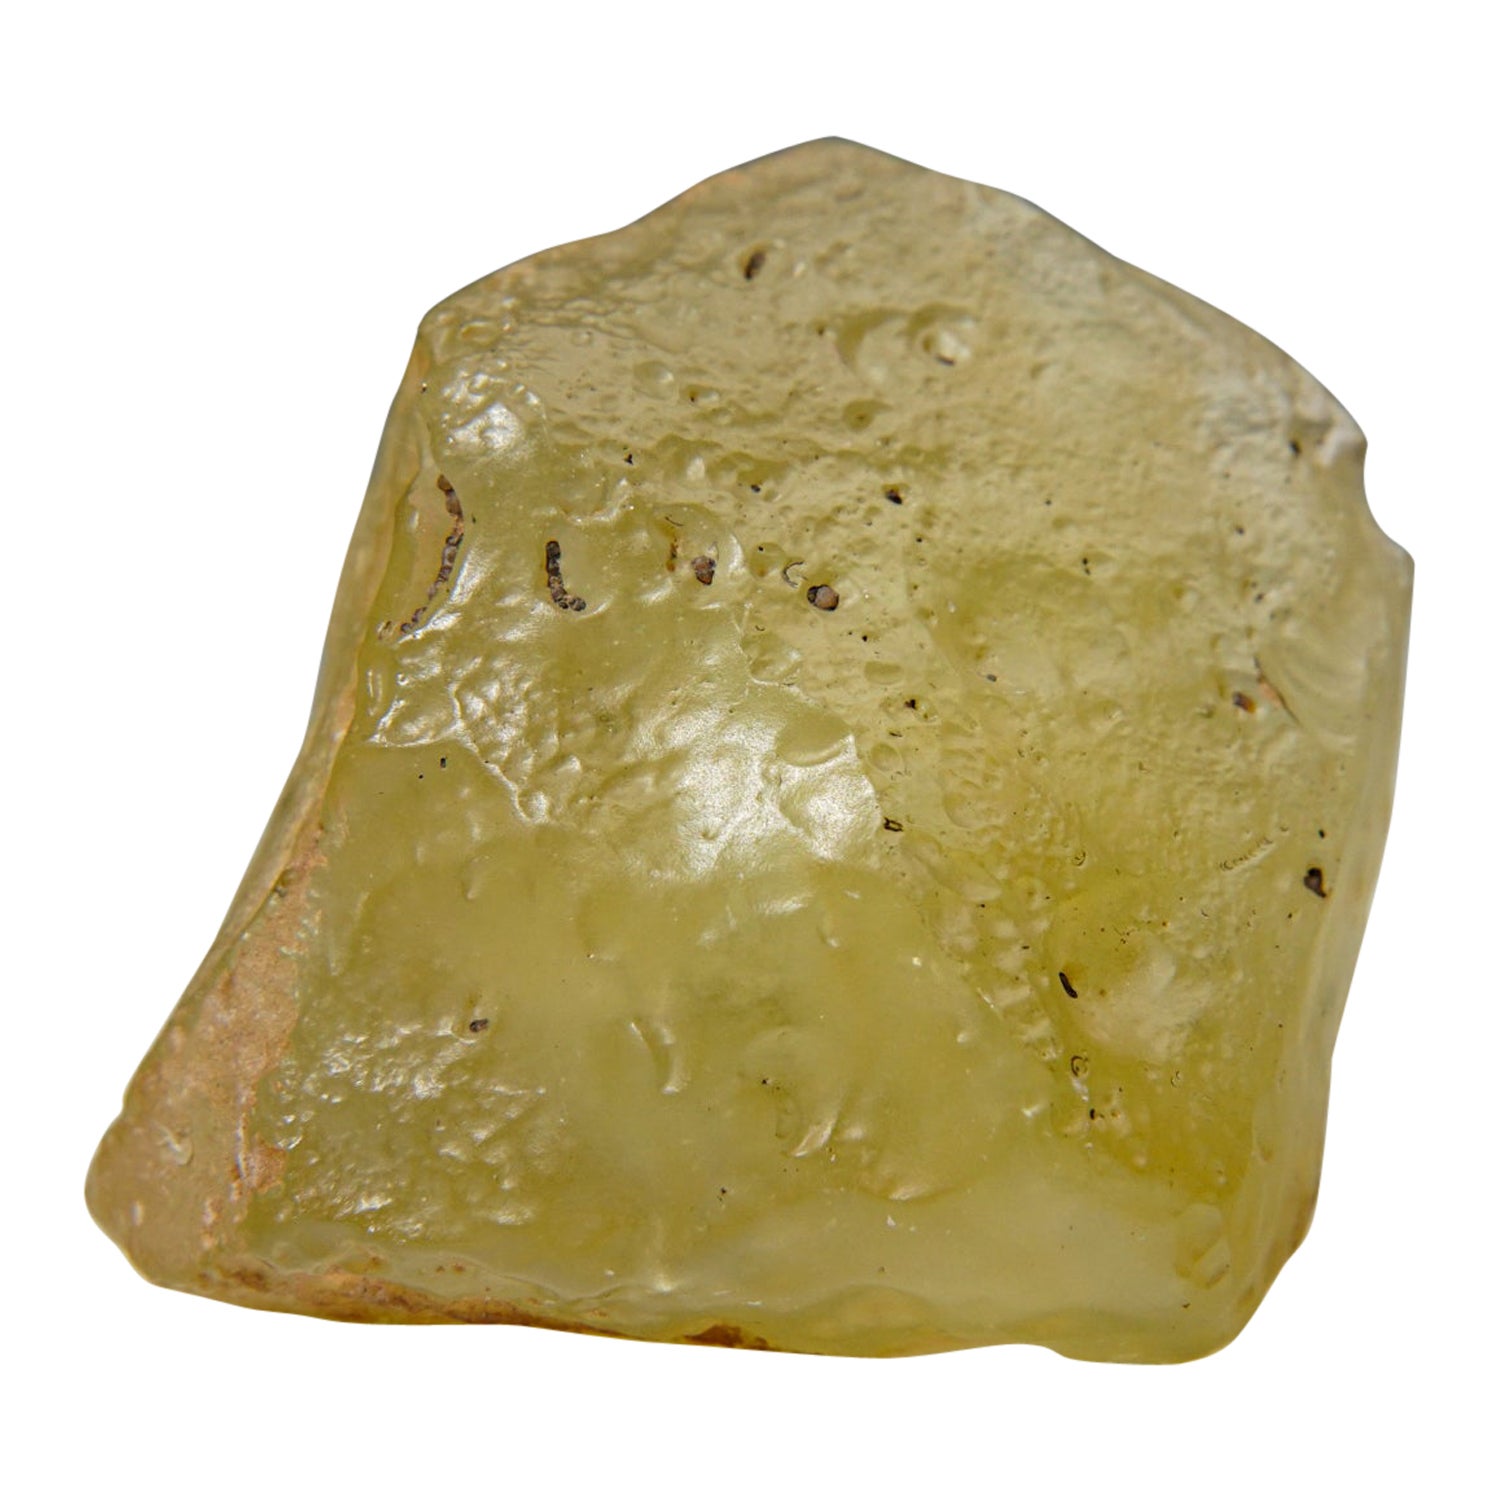 Tektite authentique en verre du désert de Liban dans une boîte d'exposition (144 grammes)